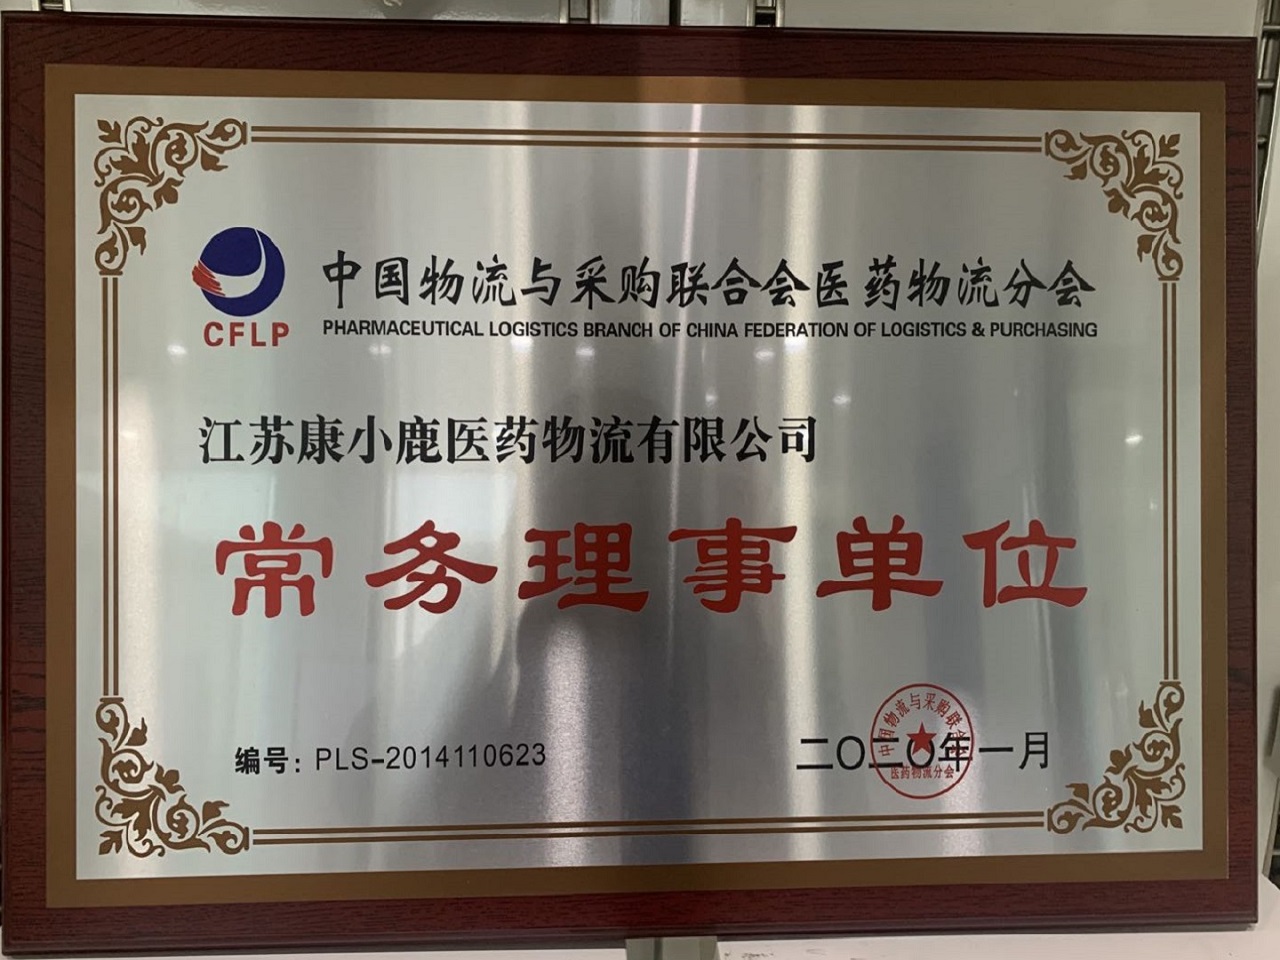 中国物流与采购联合会医药物流分会常务理事单位